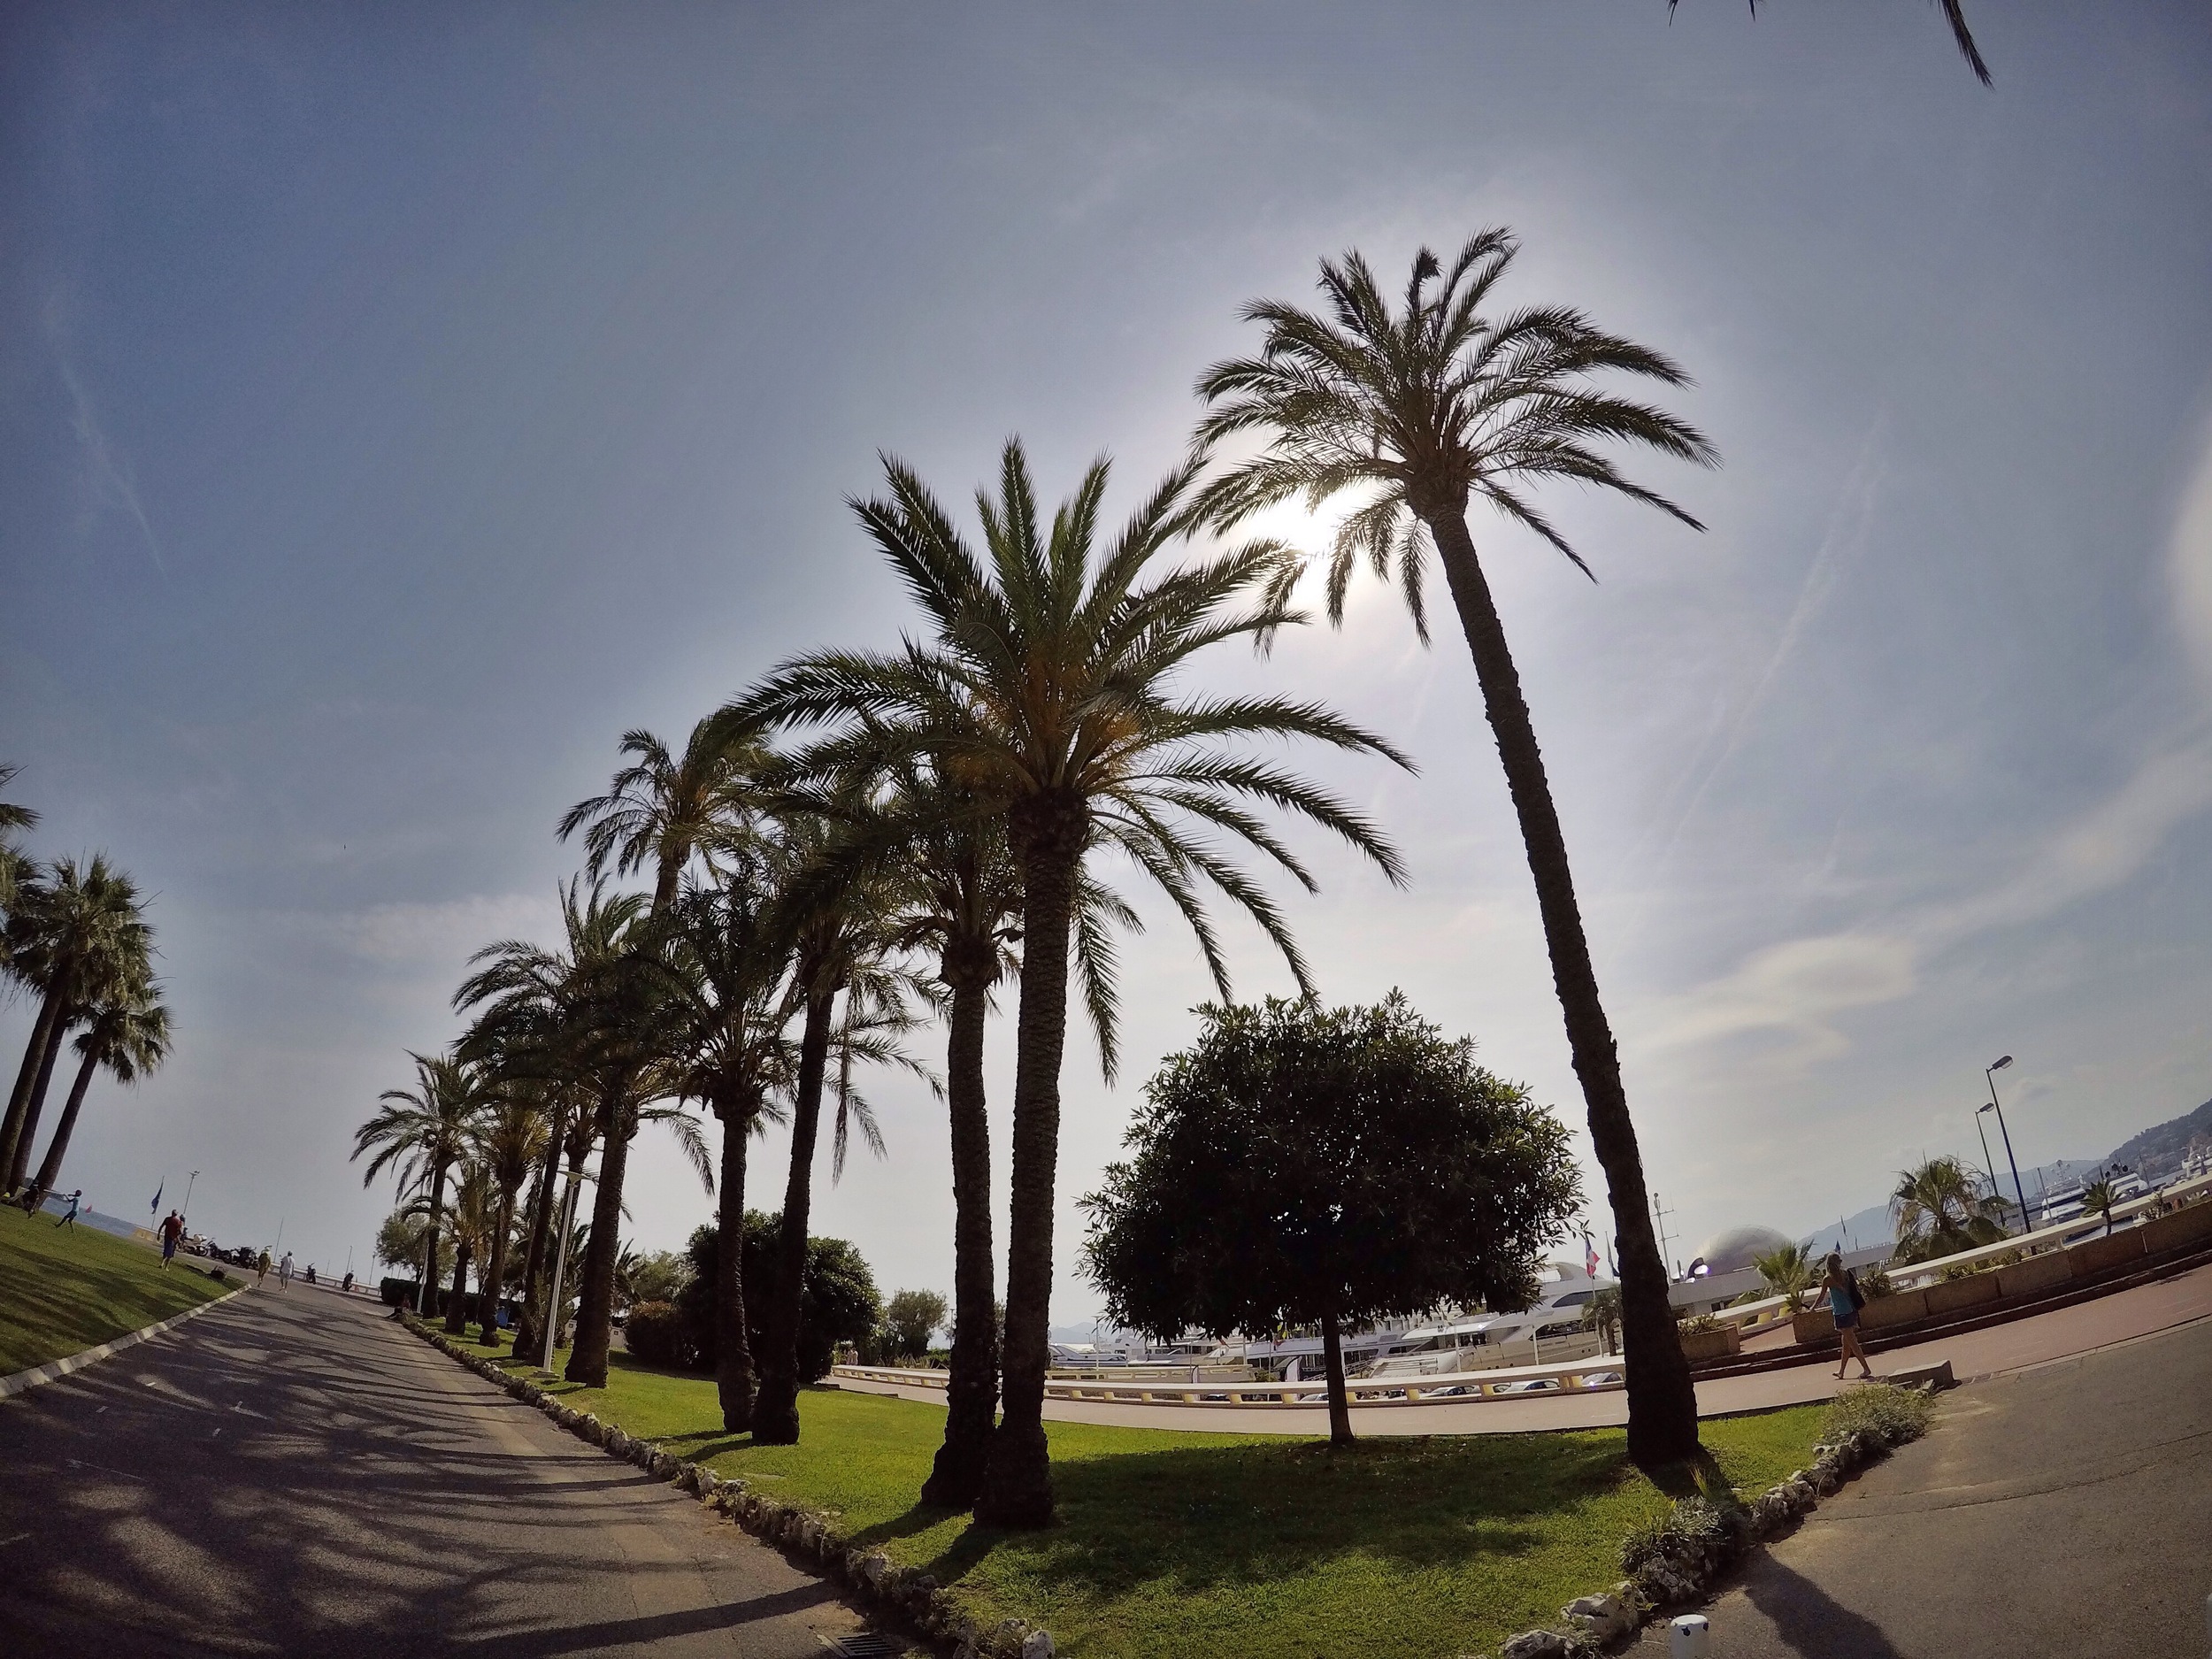 La Croisette Palm Trees - Cannes - Côte d'Azur - South of France (French Riviera)